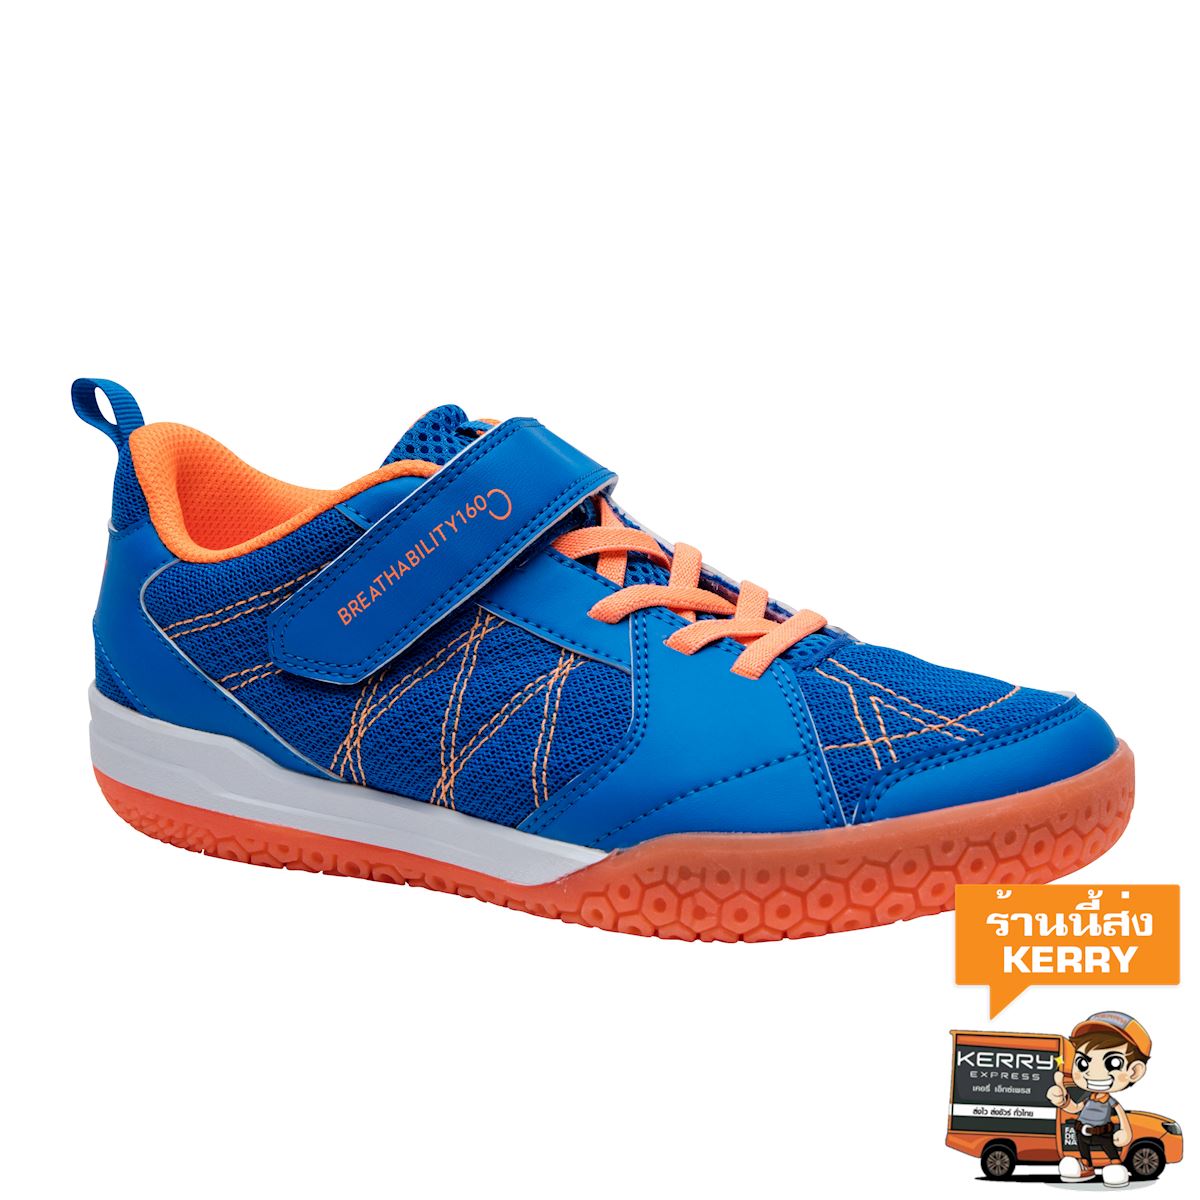 รองเท้าแบดมินตันสำหรับเด็กรุ่น BS 160 (สีฟ้า/ส้ม) เด็กผู้ชาย 4 ถึง 16 ปี แบดมินตัน สควอช รองเท้ากีฬา รองเท้า รองเท้าผ้าใบ